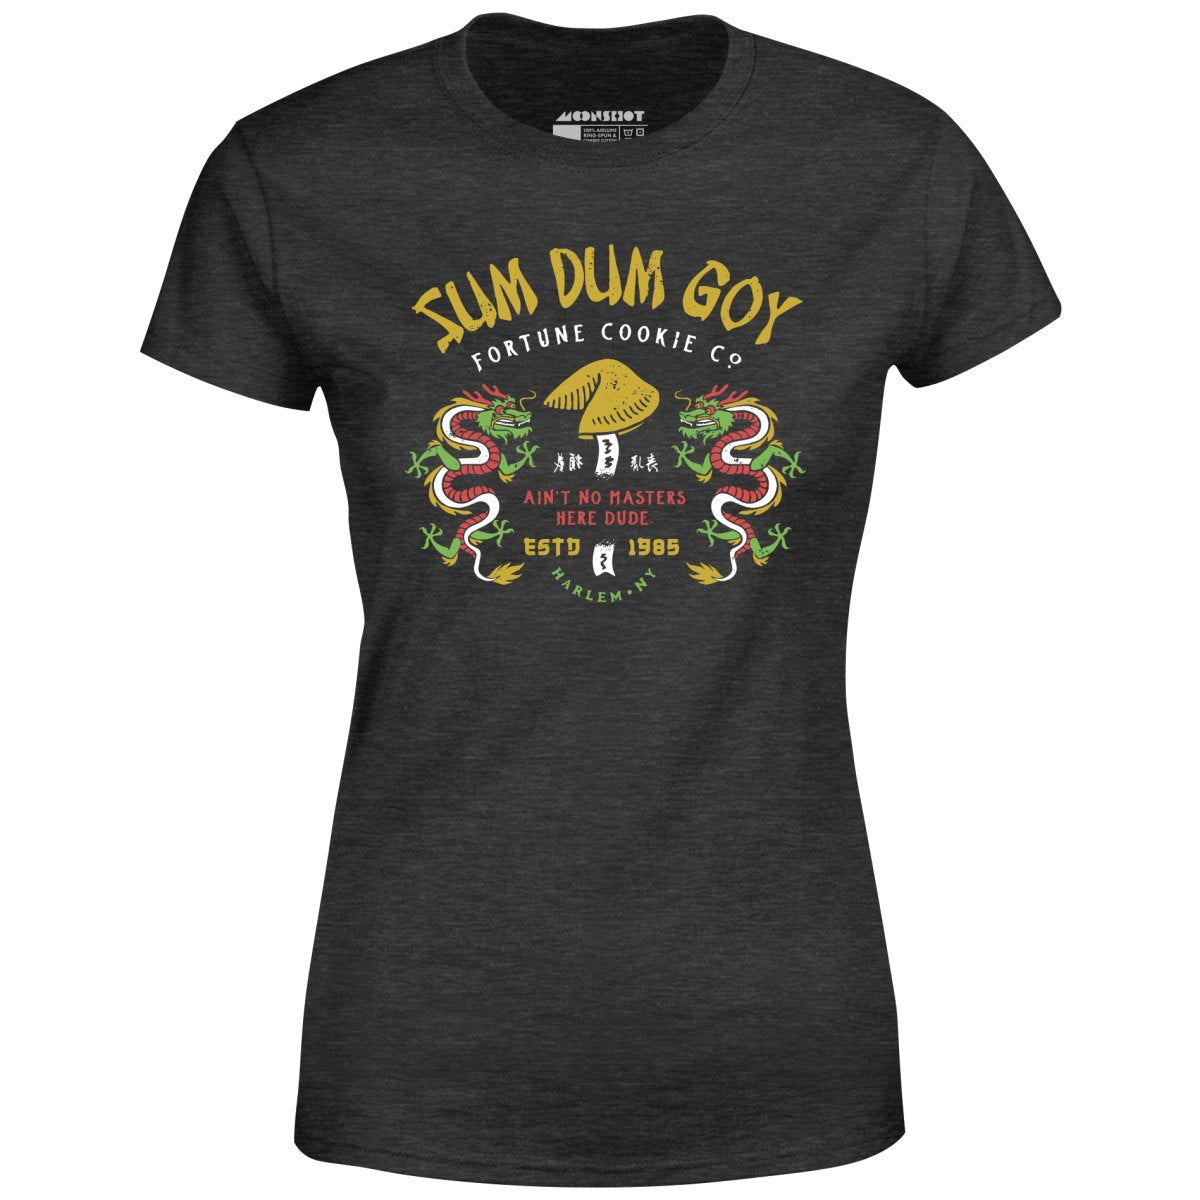 Sum Dum Goy Fortune Cookie Co. - Last Dragon - Women's T-Shirt